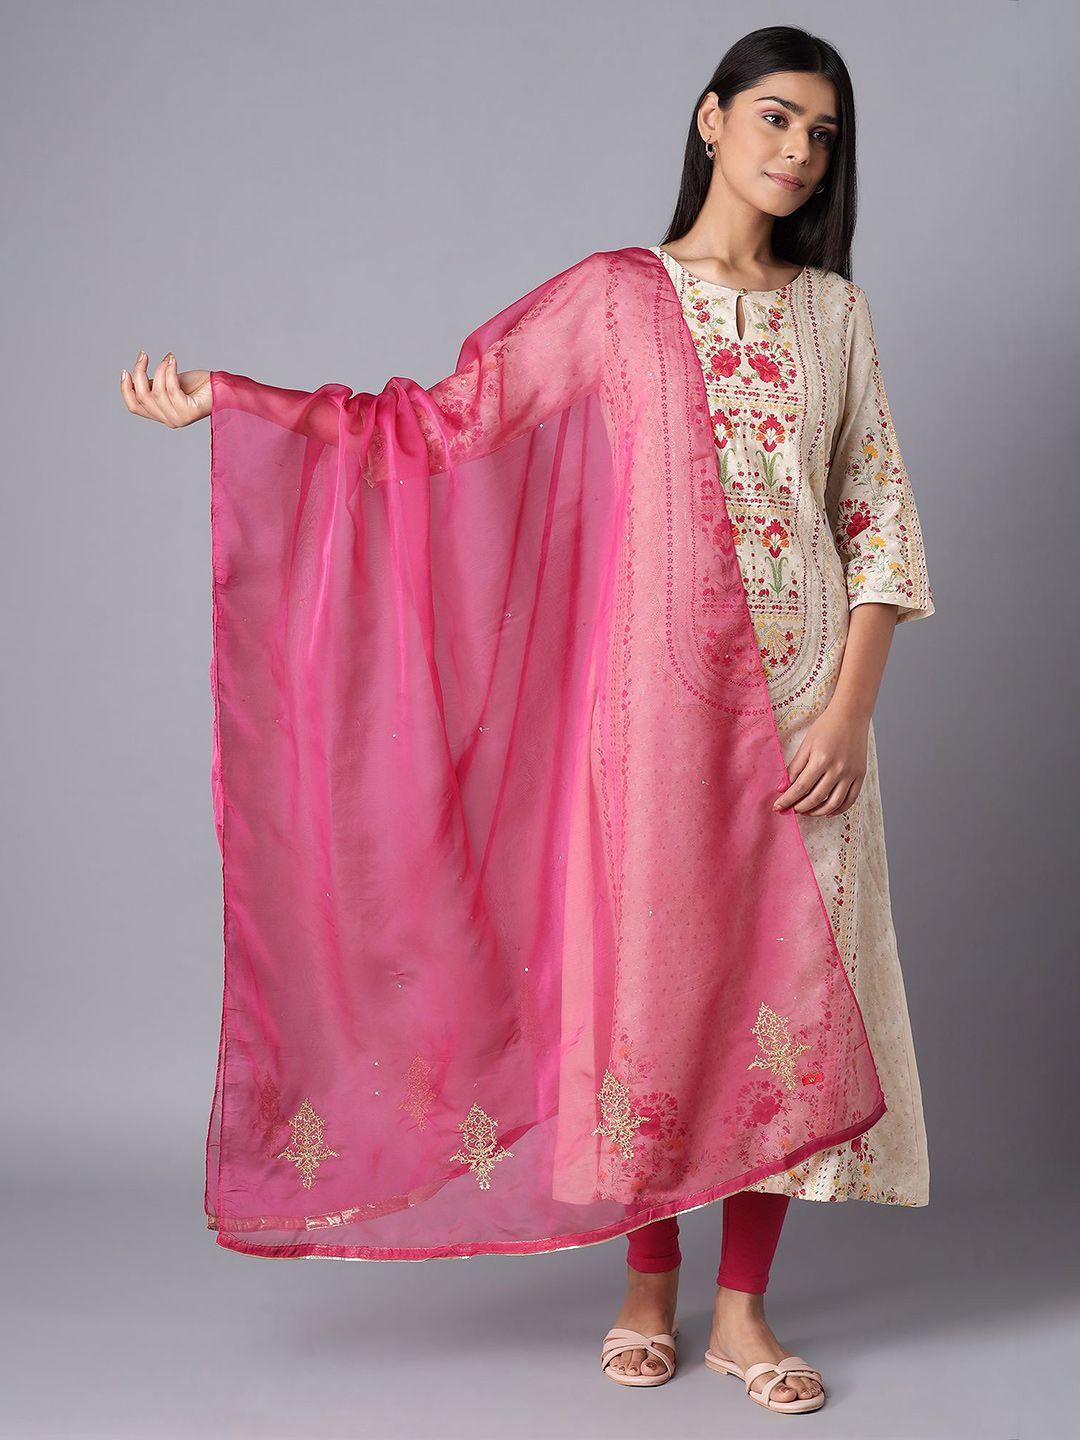 w women dark pink ethnic motifs embroidered dupatta